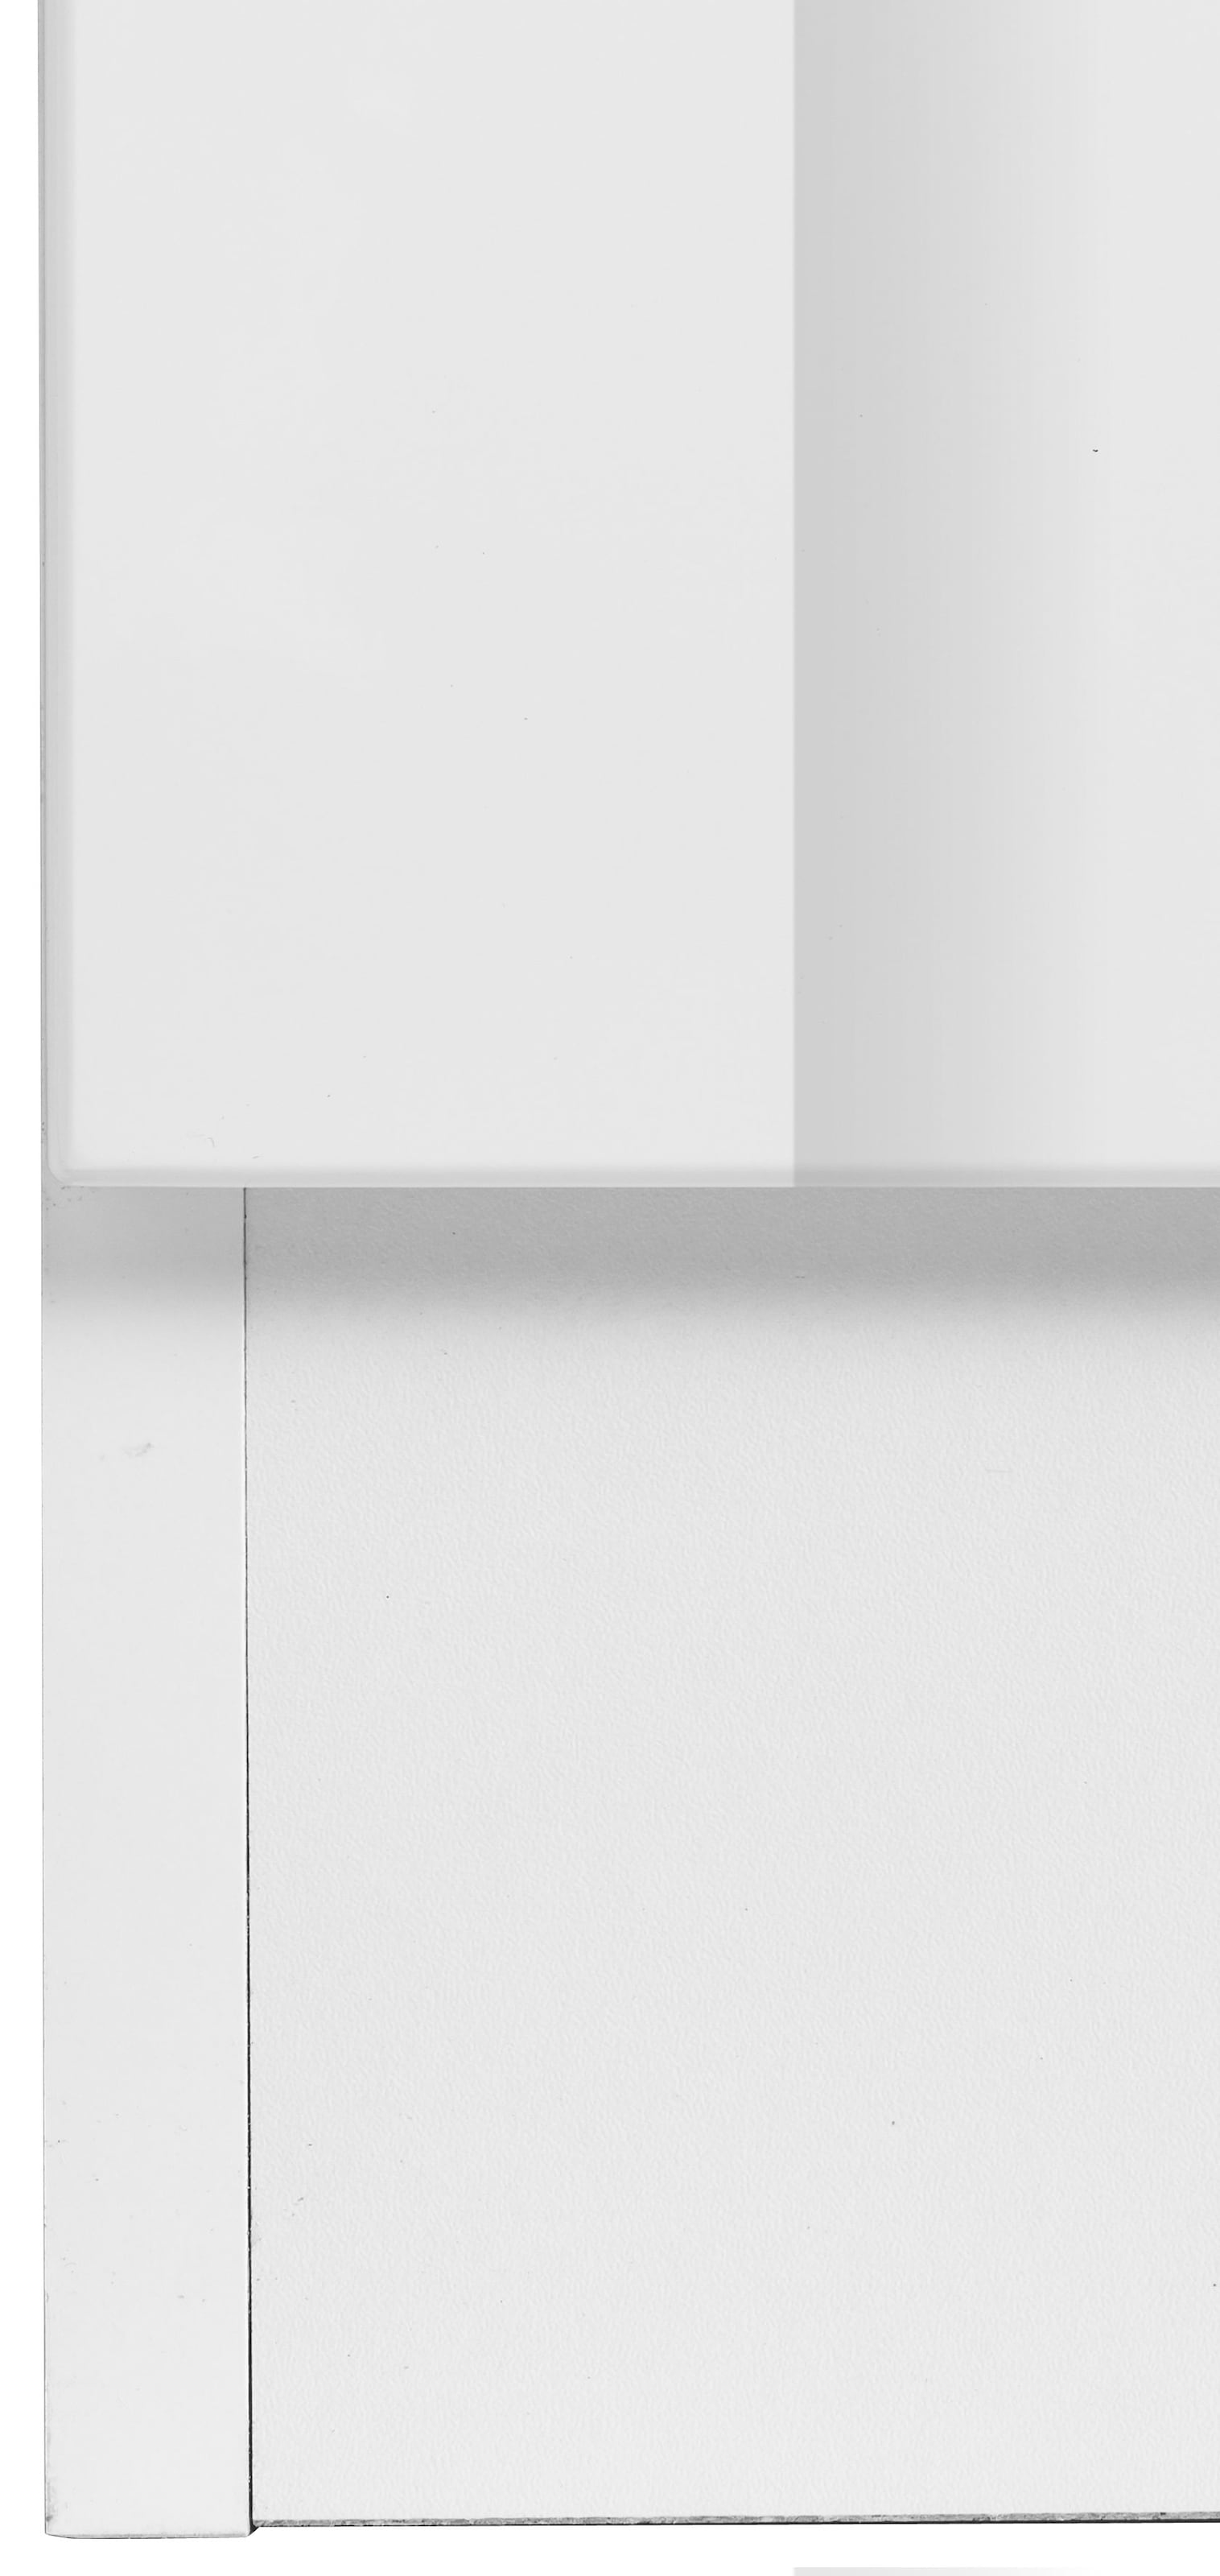 HELD MÖBEL Spülenschrank »Trient«, 110 cm breit, inkl. Tür/Socke für Einbaugeschirrspüler